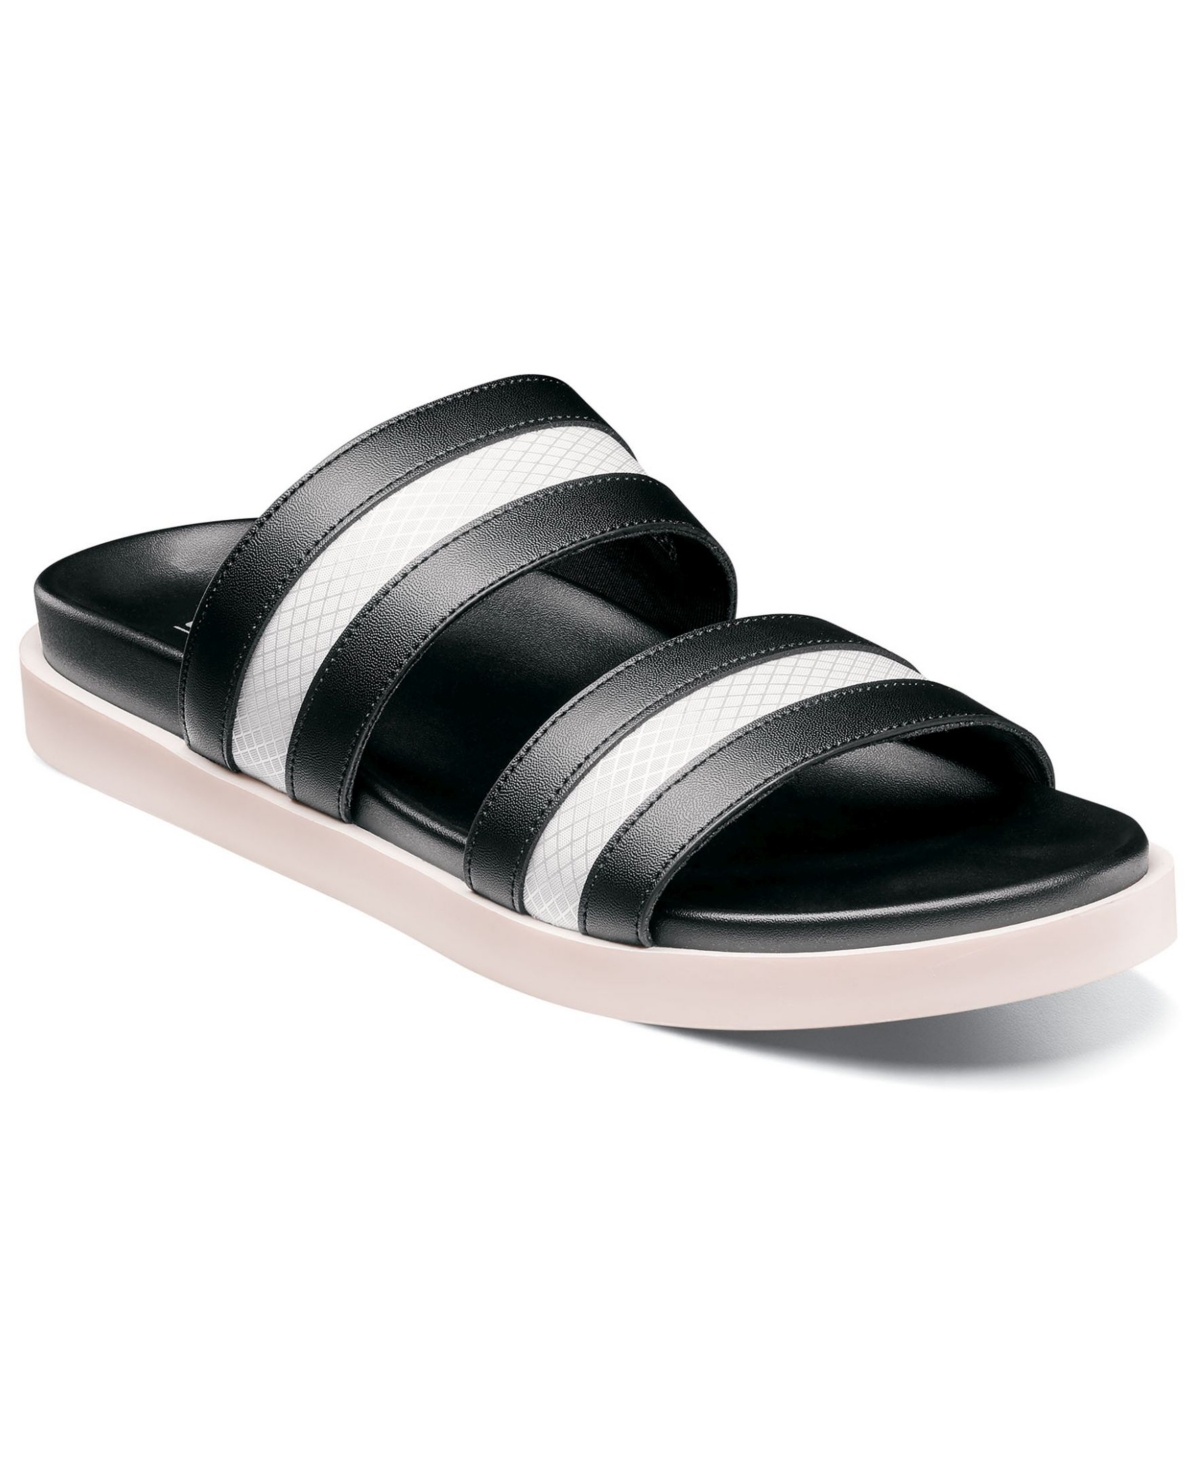 Men's Metro Double Strap Slide Sandal - Black and White